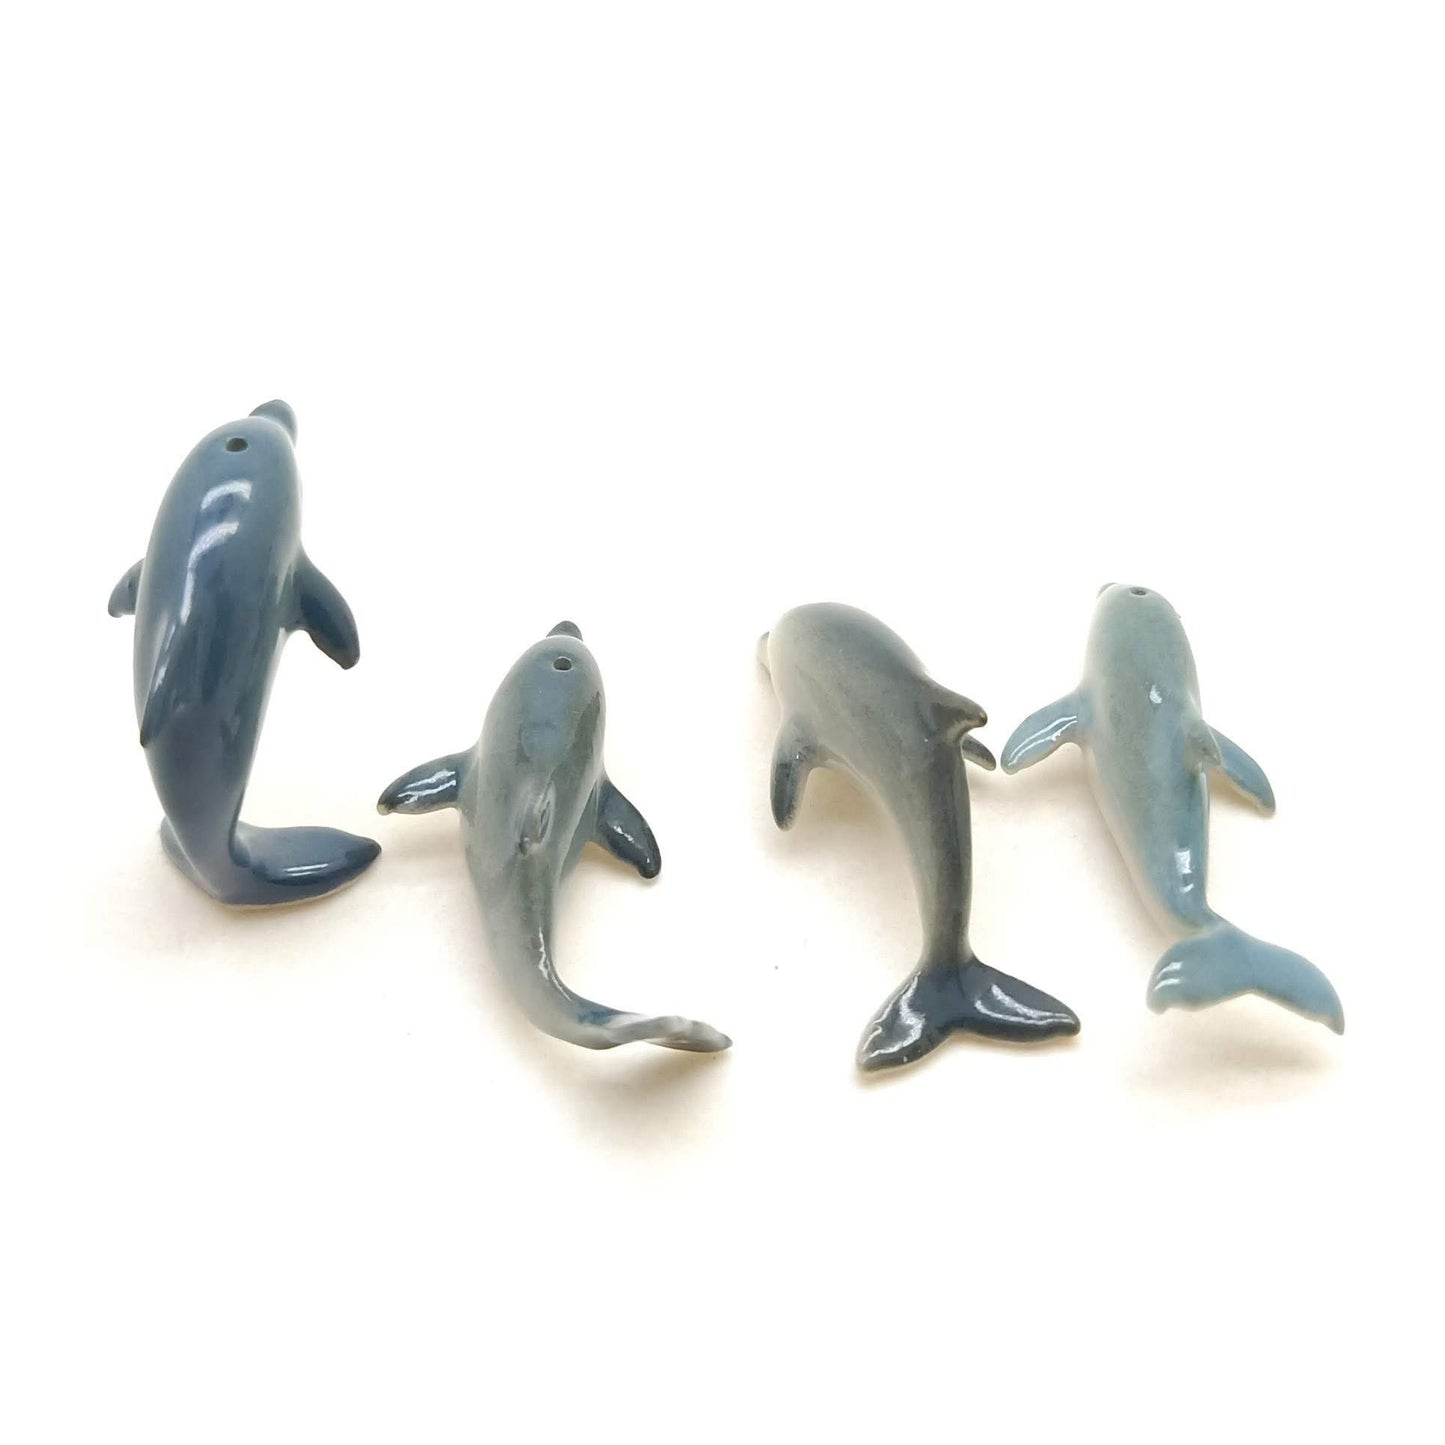 4 Tiny Thin Dolphins